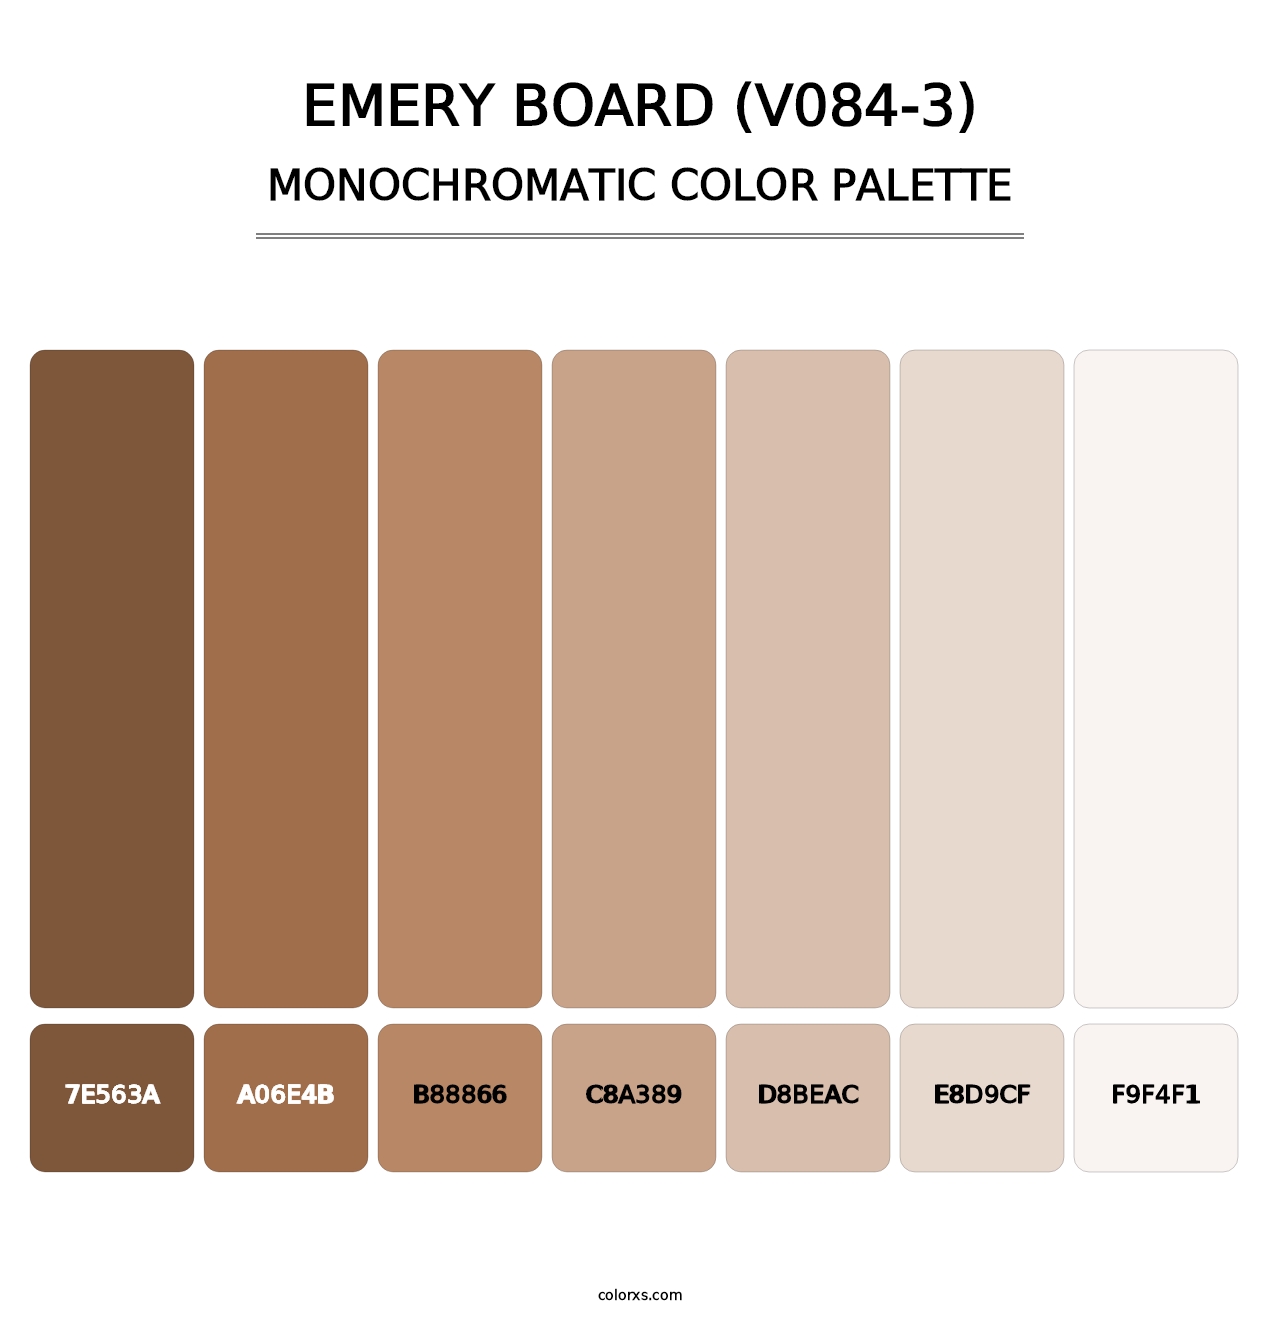 Emery Board (V084-3) - Monochromatic Color Palette